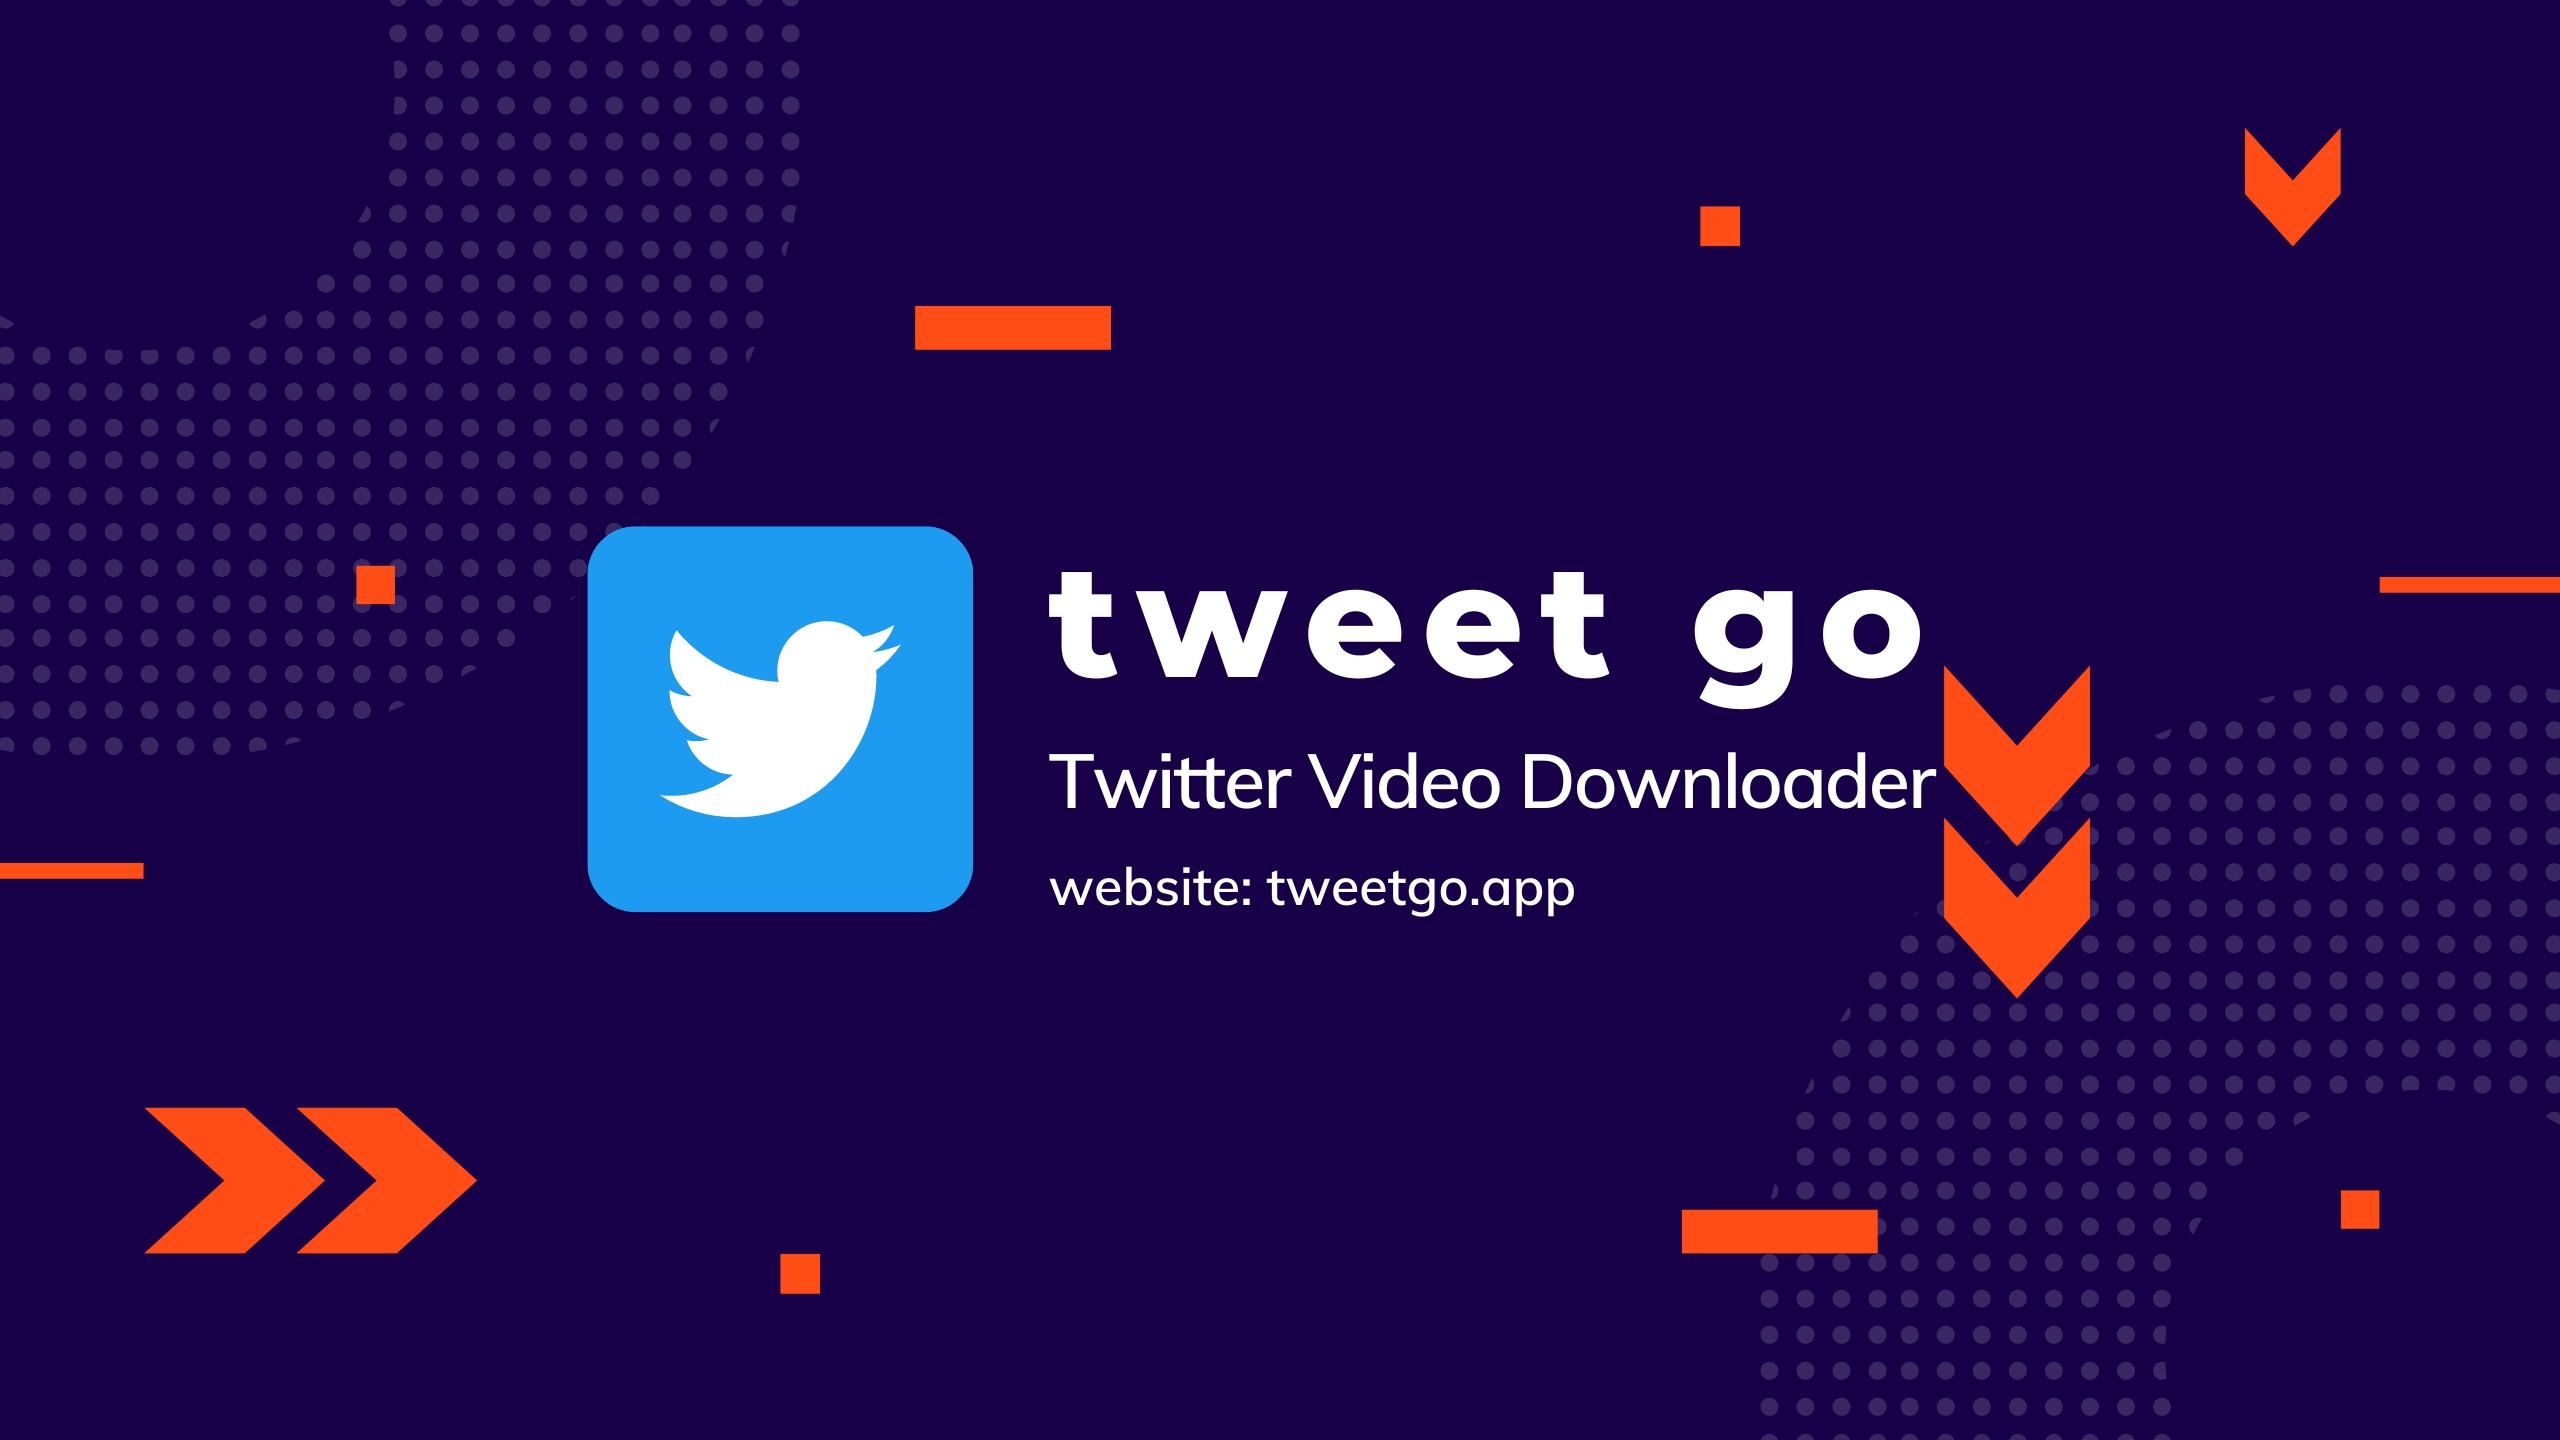 TweetGo (tweetgo.app) - Twitter Video Downloader - Скачать видео из твиттера